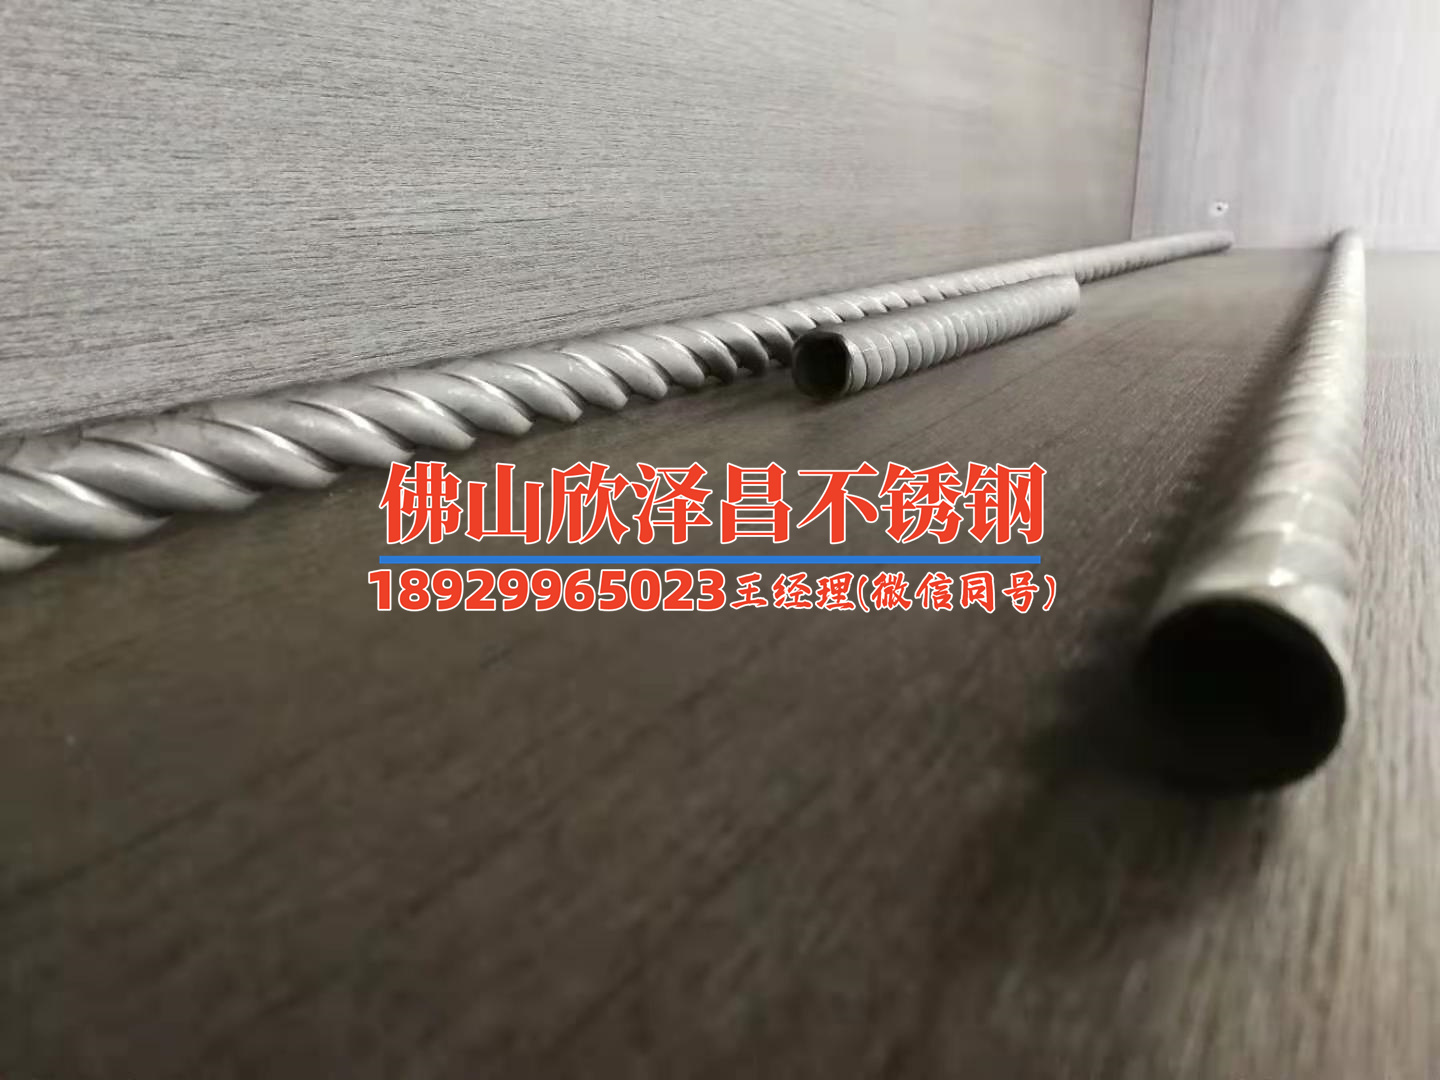 广州800不锈钢换热管市场价(广州800不锈钢换热管市场行情及价格解析)